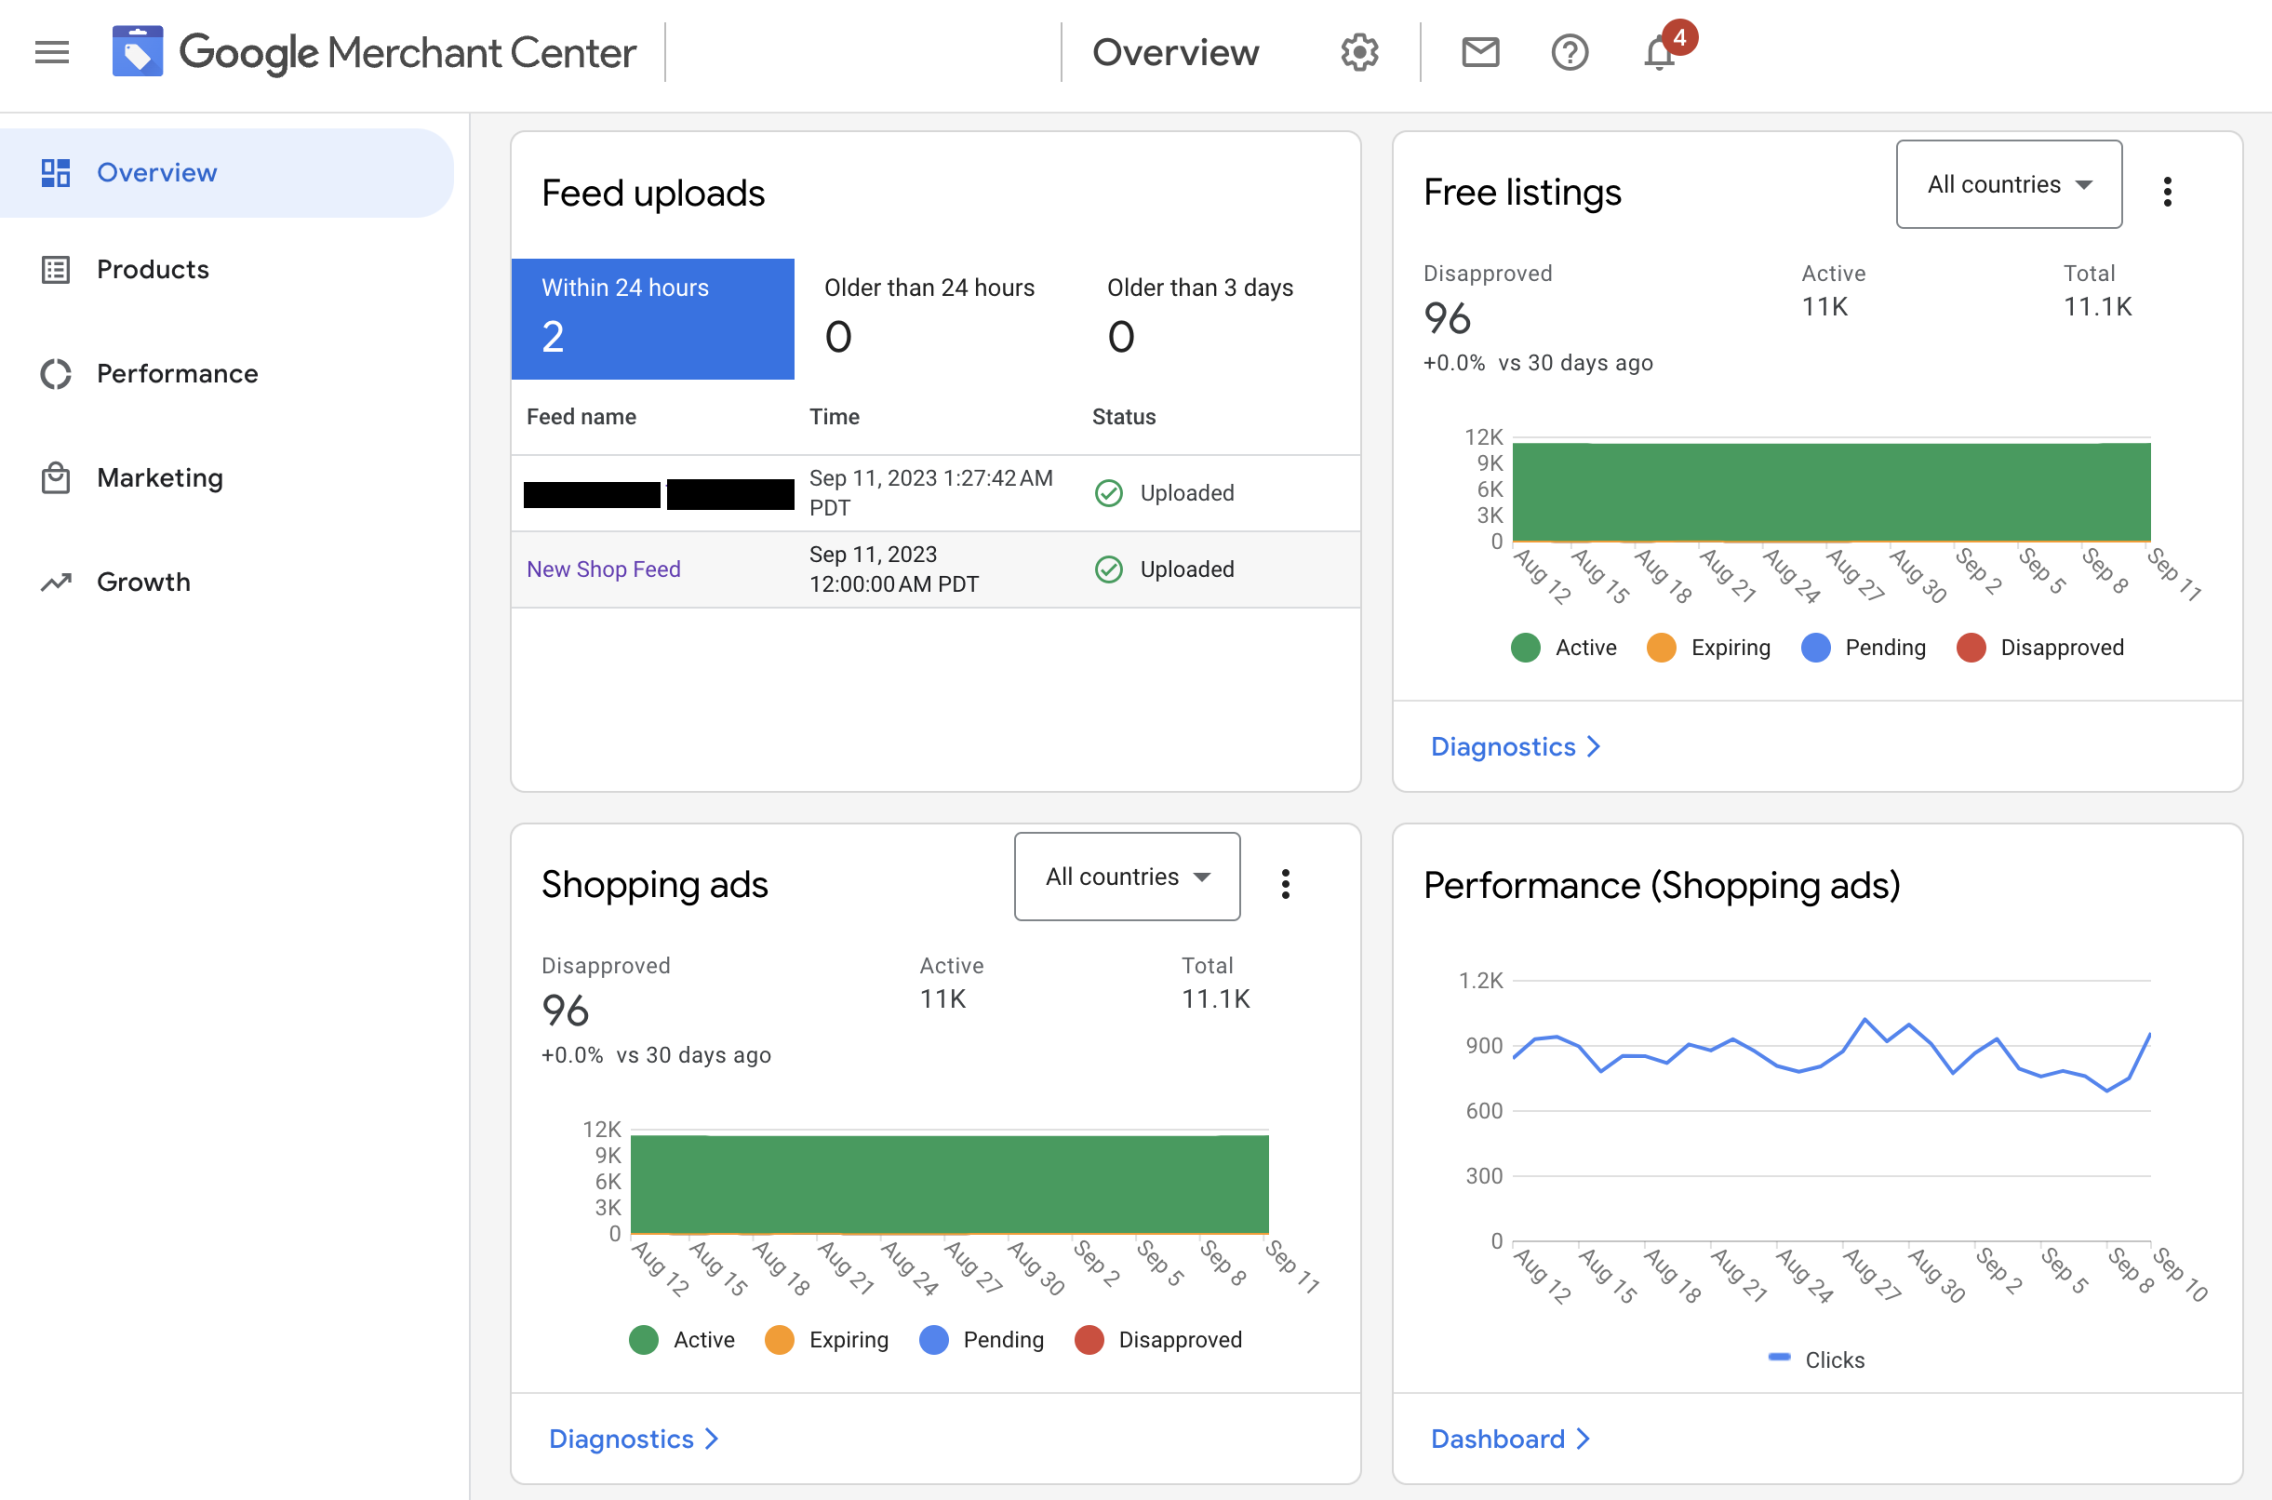 Screen shot of Google Merchant Center interface - Overview Tab